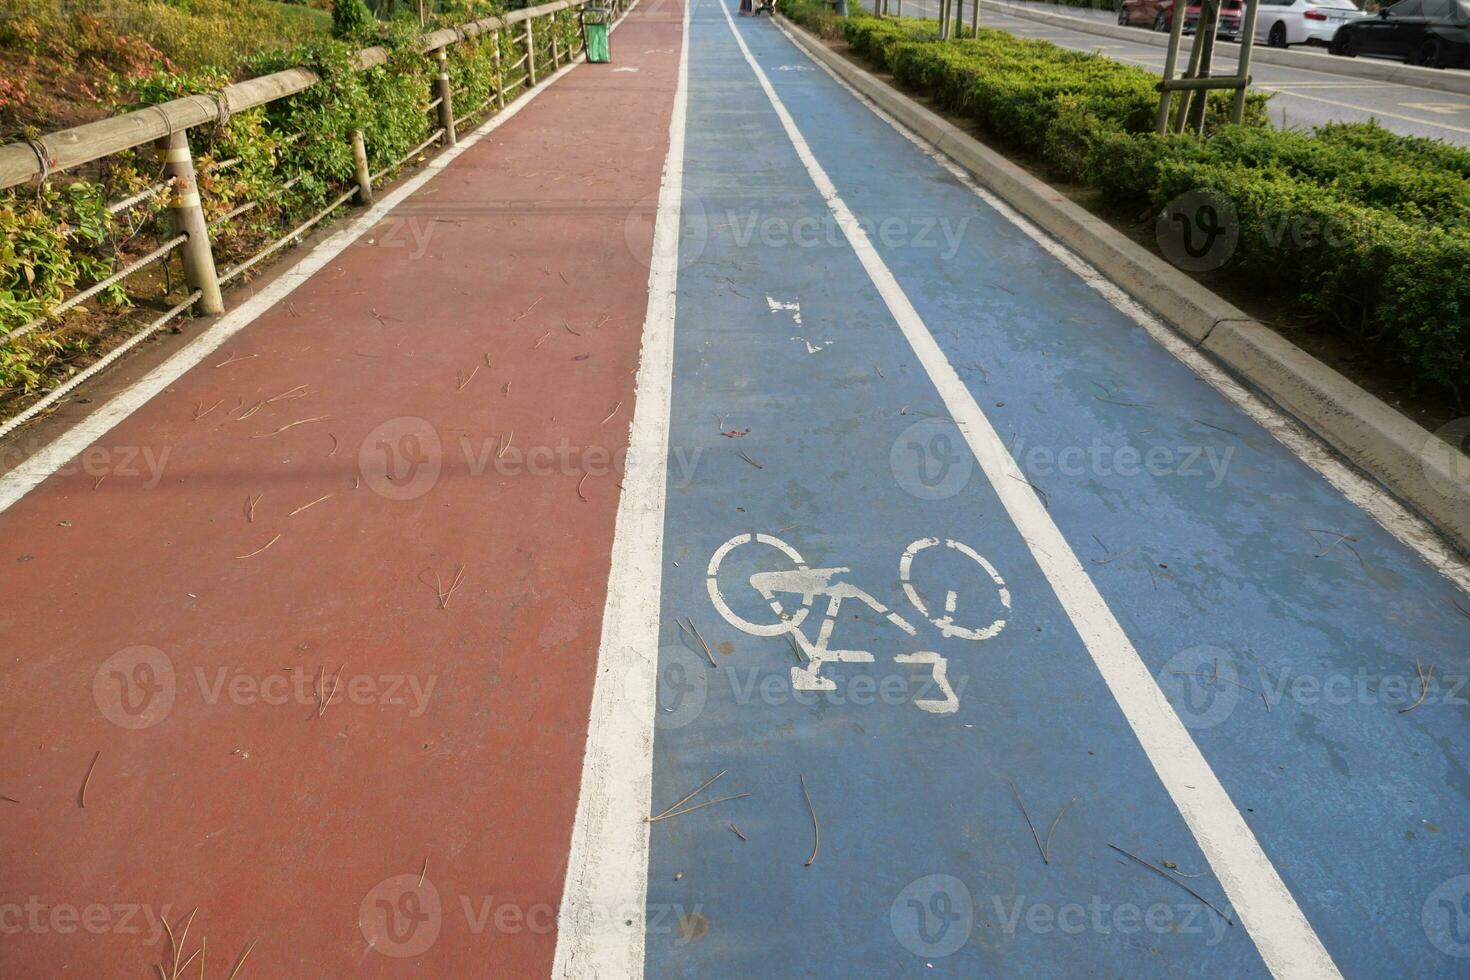 bicicletta simbolo su il blu strada superficie foto